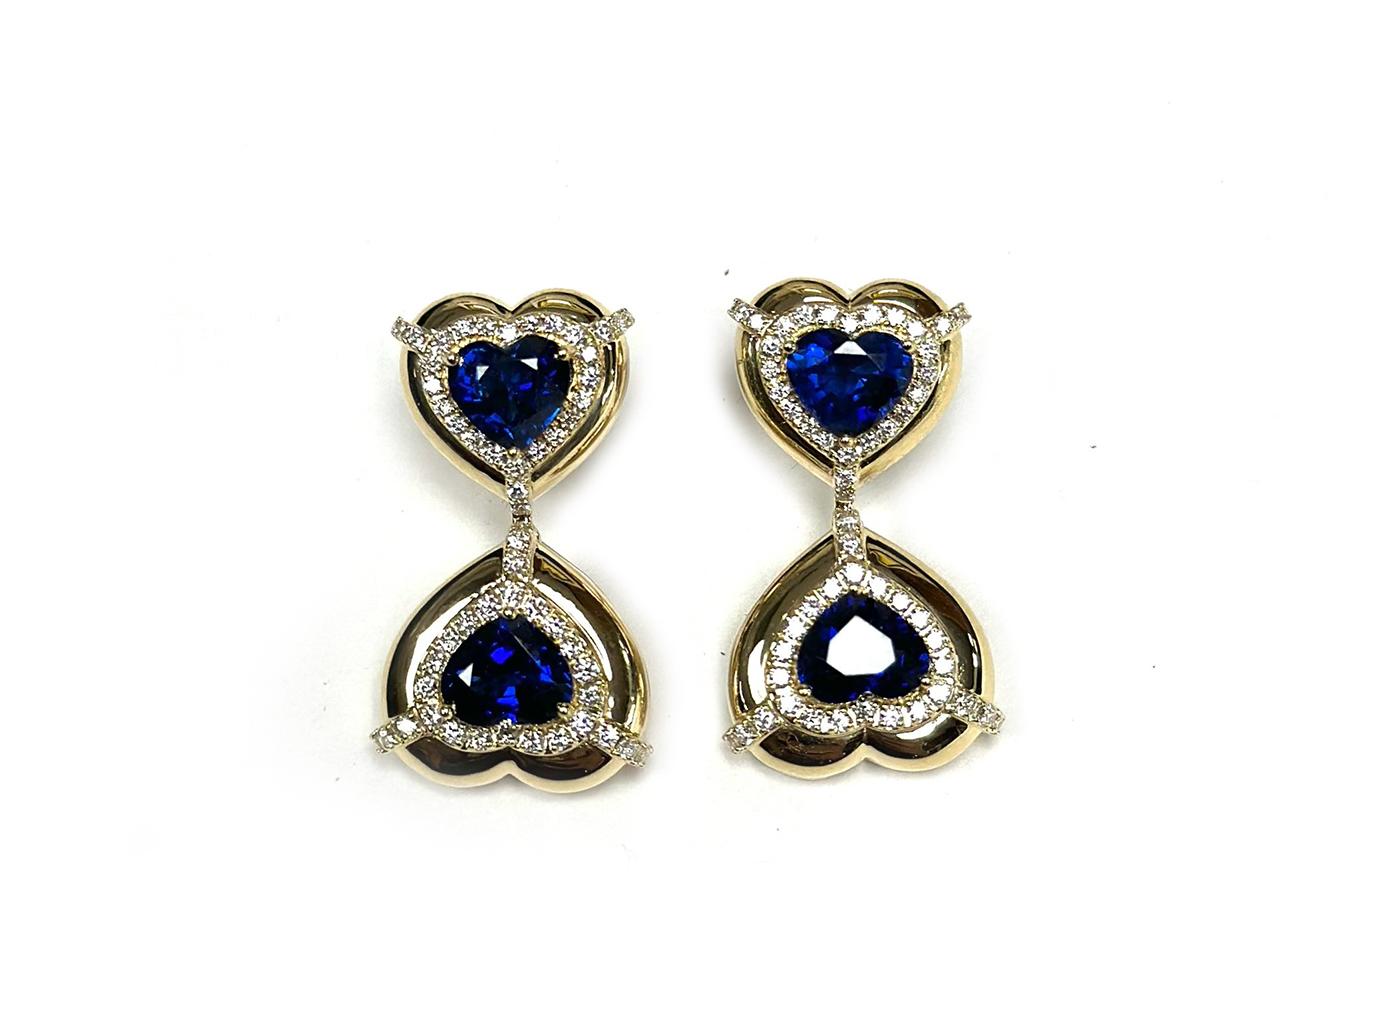 Heart Cut Goshwara Double Heart Shape Blue Sapphire with Diamonds Earrings For Sale